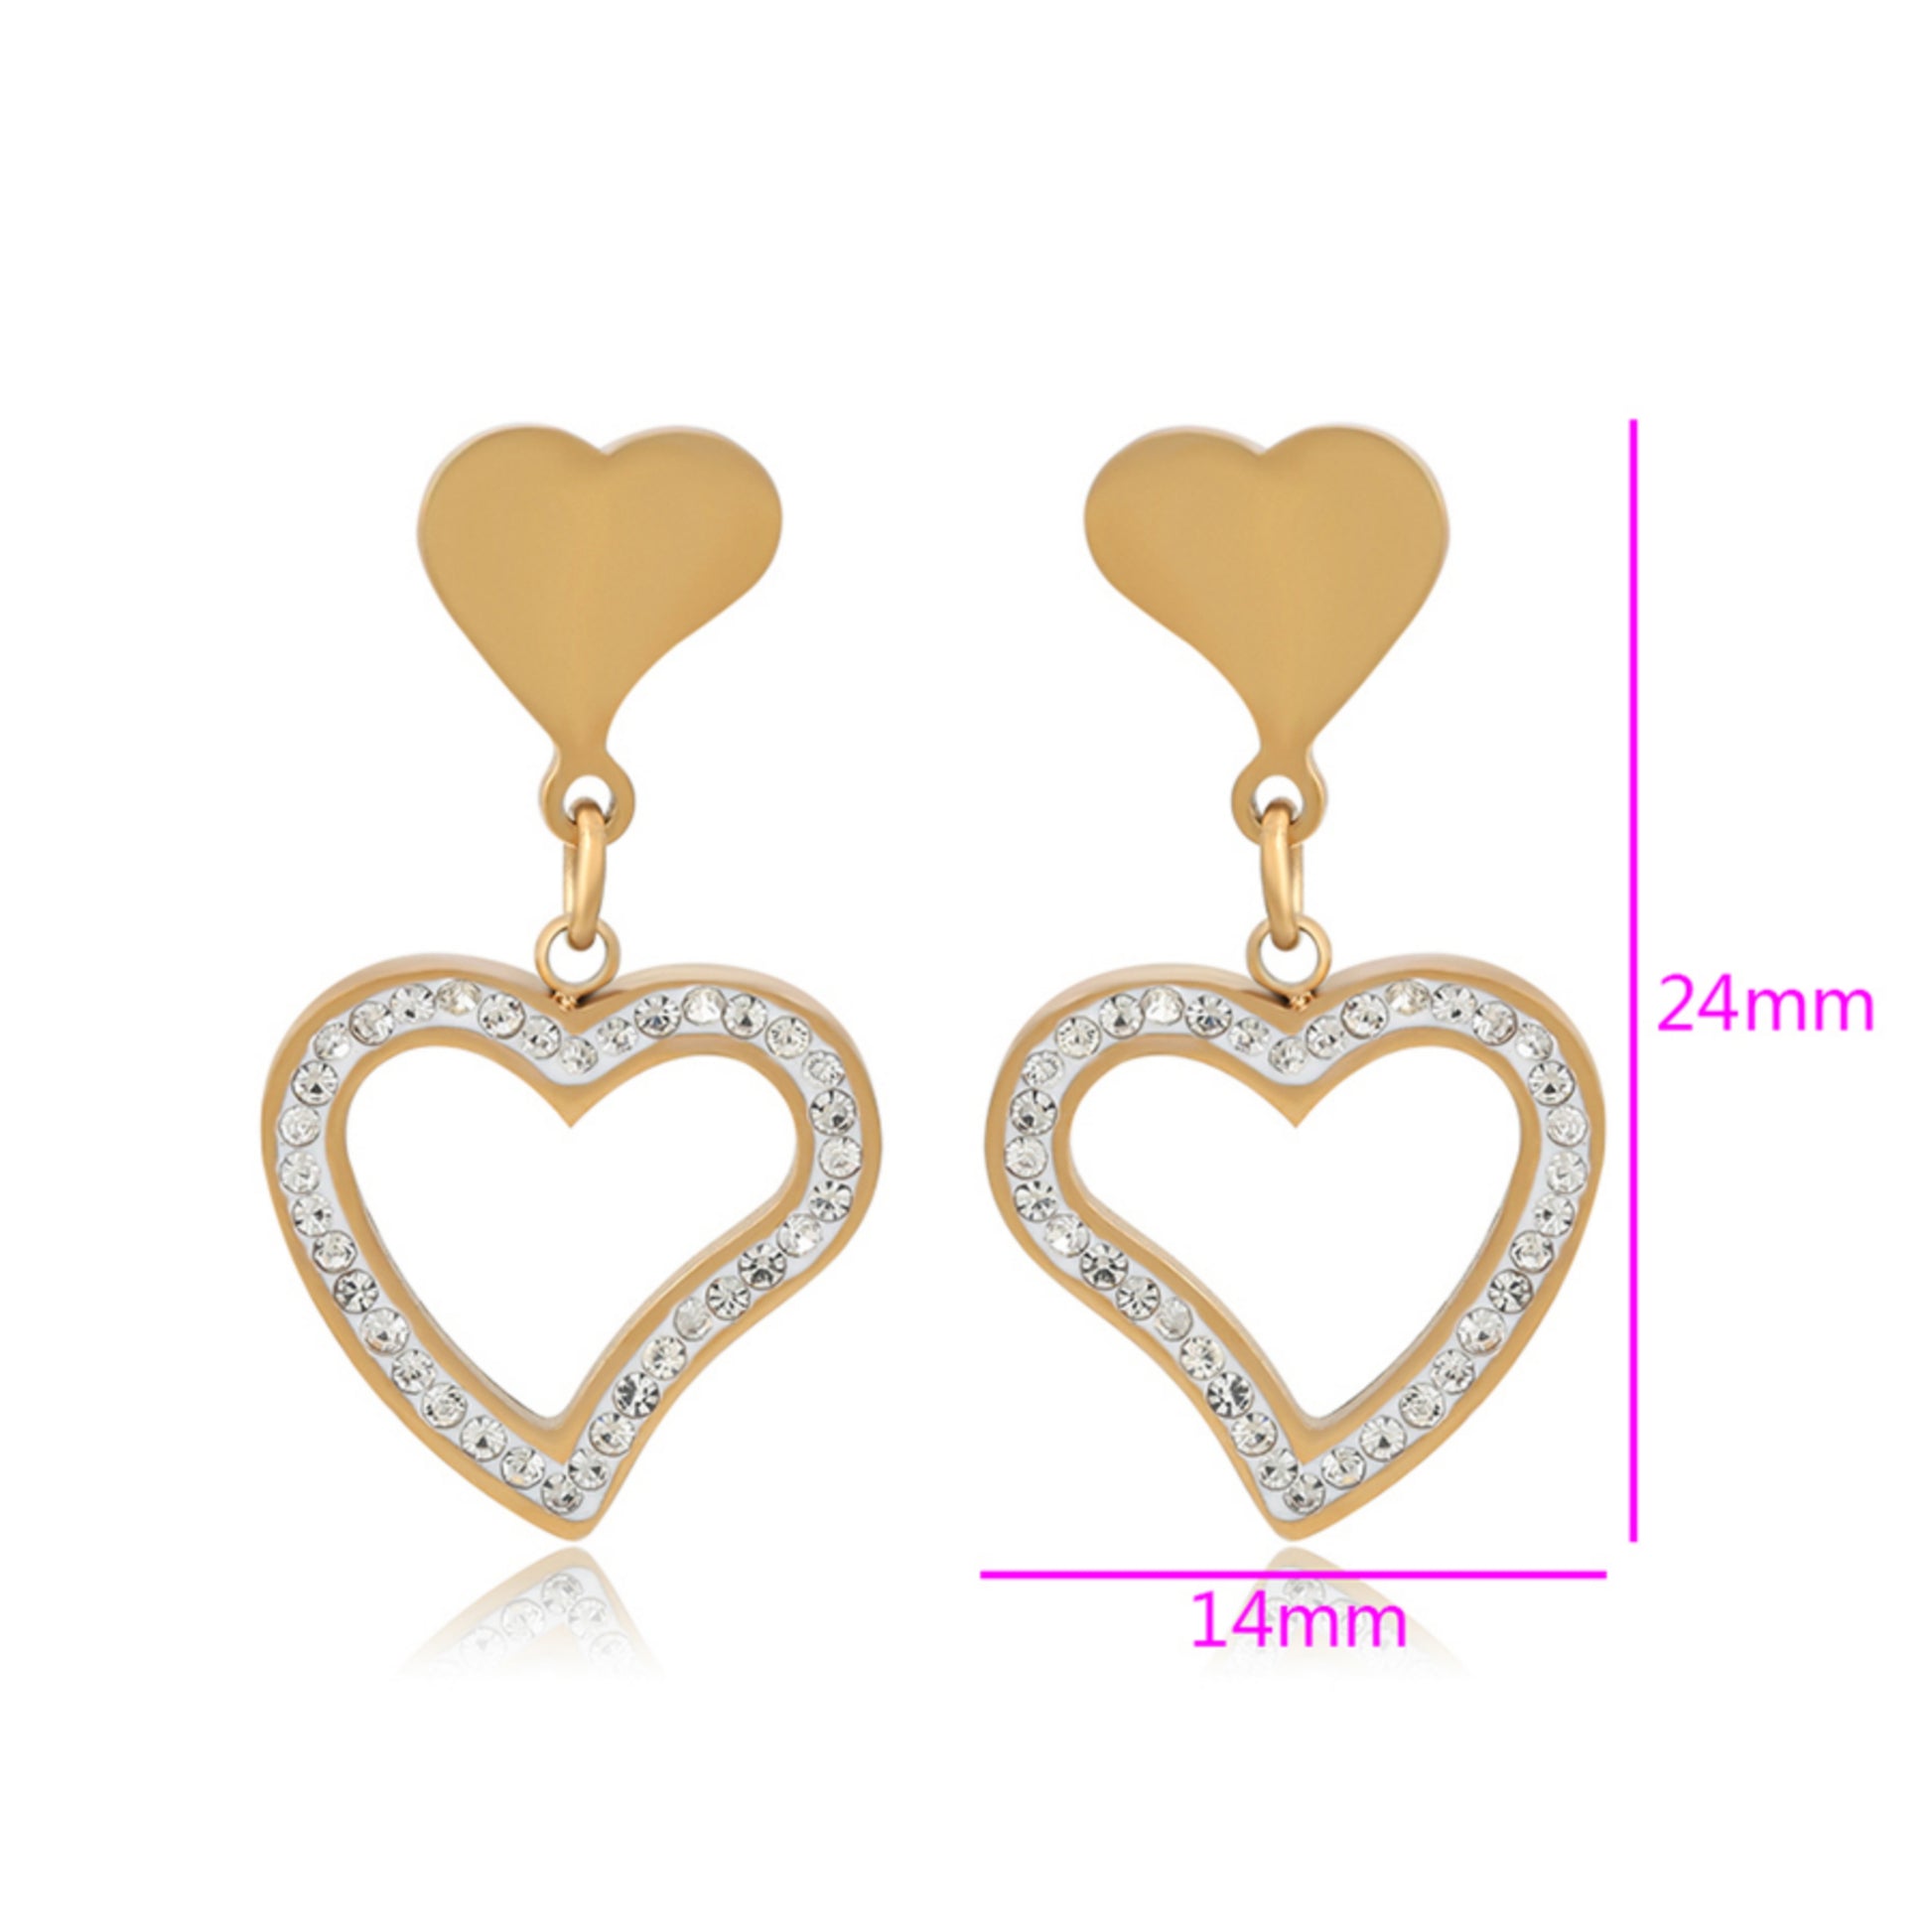 Surgical Steel Heart on Heart Post Earrings - HK Jewels